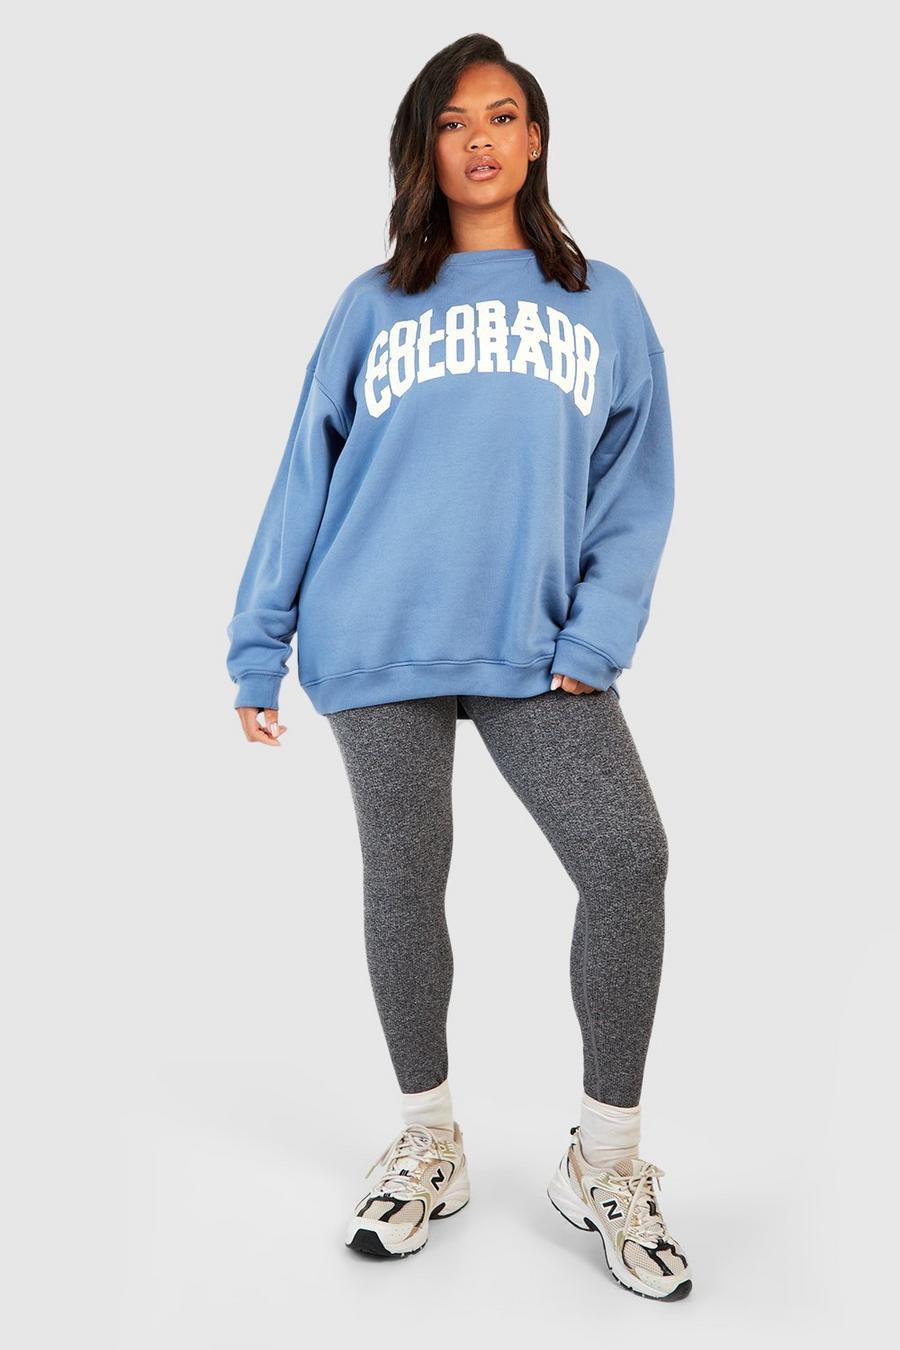 Plus Sweatshirt mit Colorado-Slogan, Blue